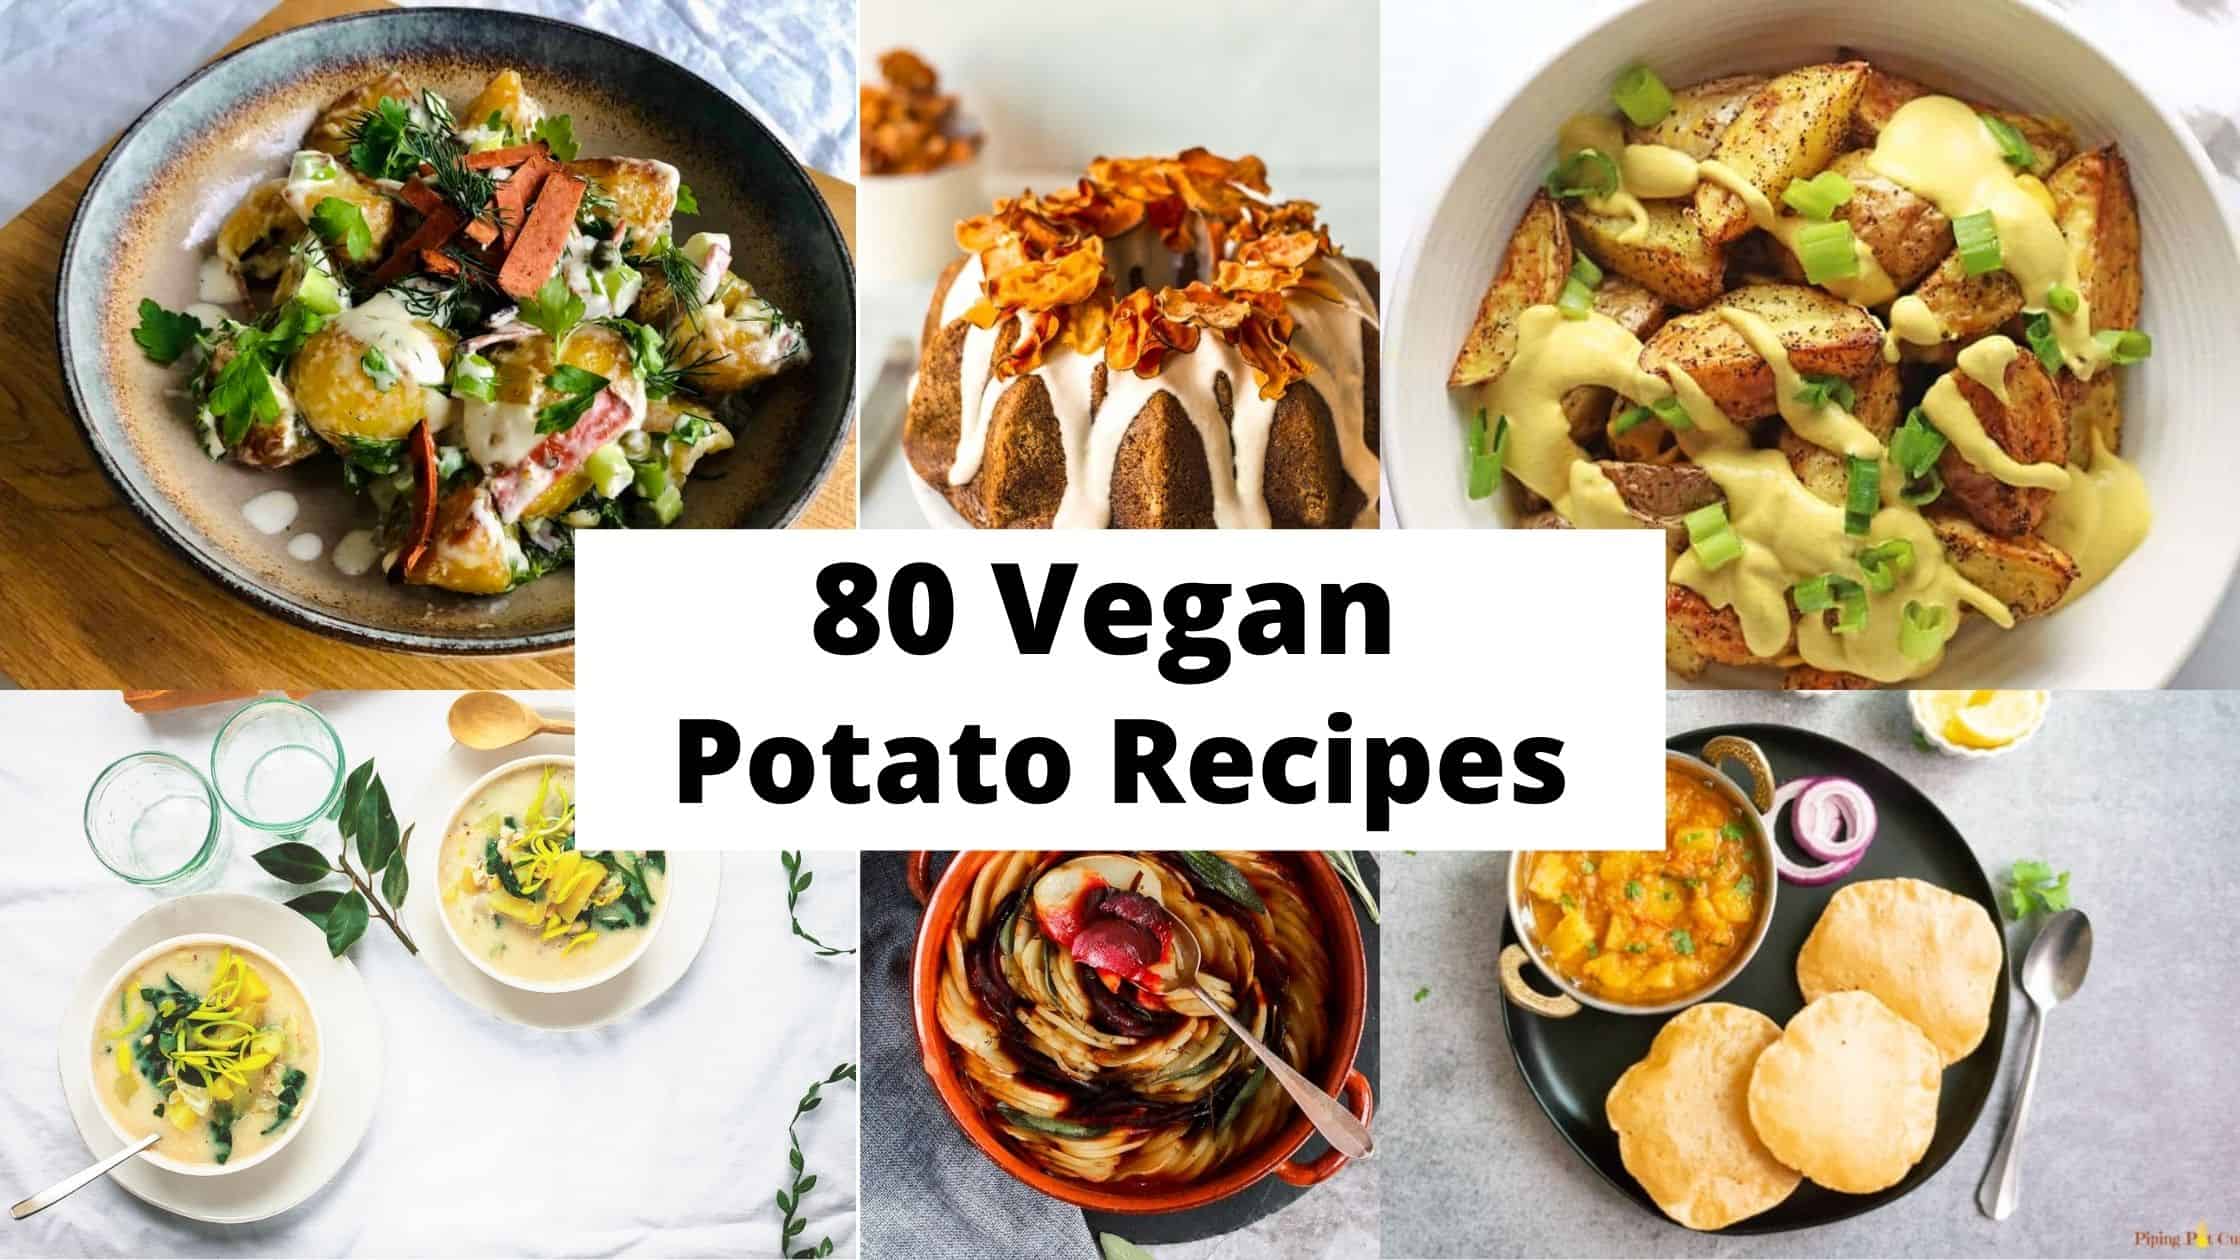 The Best Vegan Potato Recipes | 80 Vegan Potato Recipes